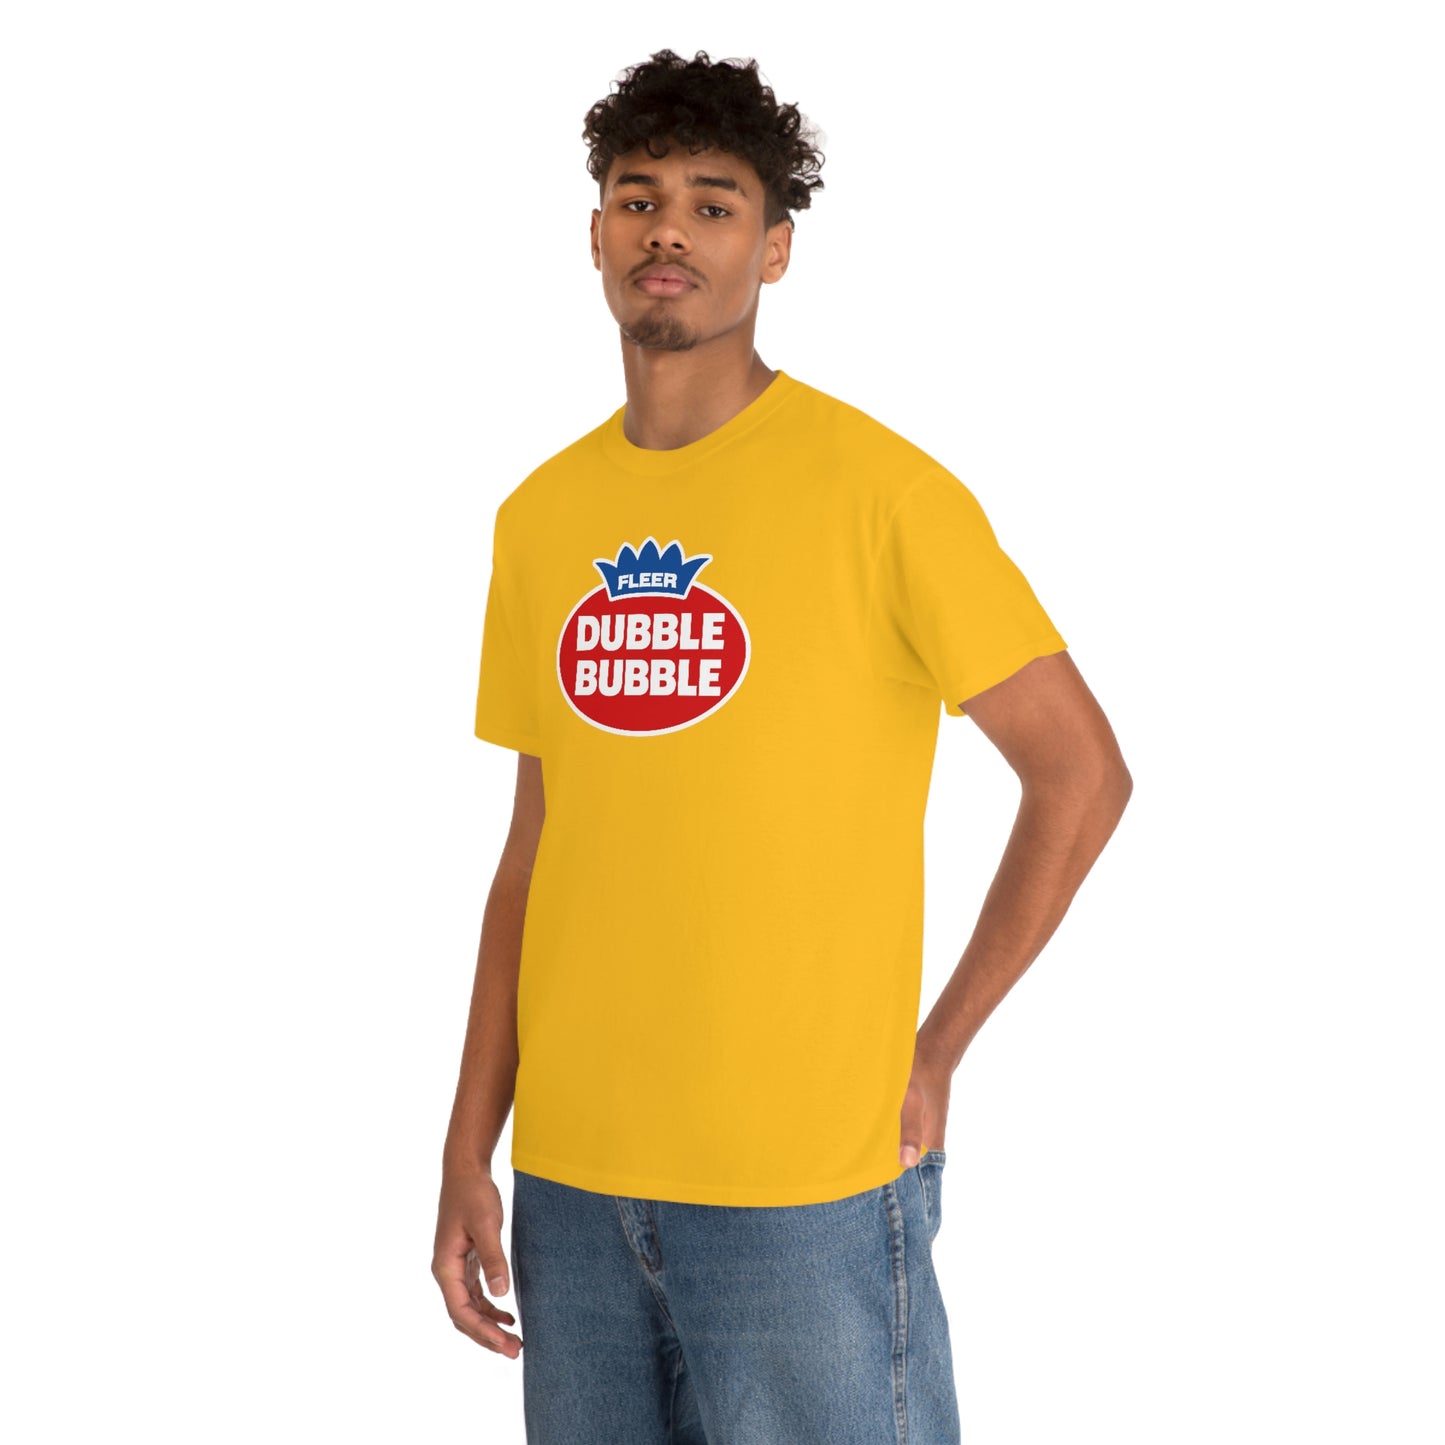 Dubble Bubble T-Shirt